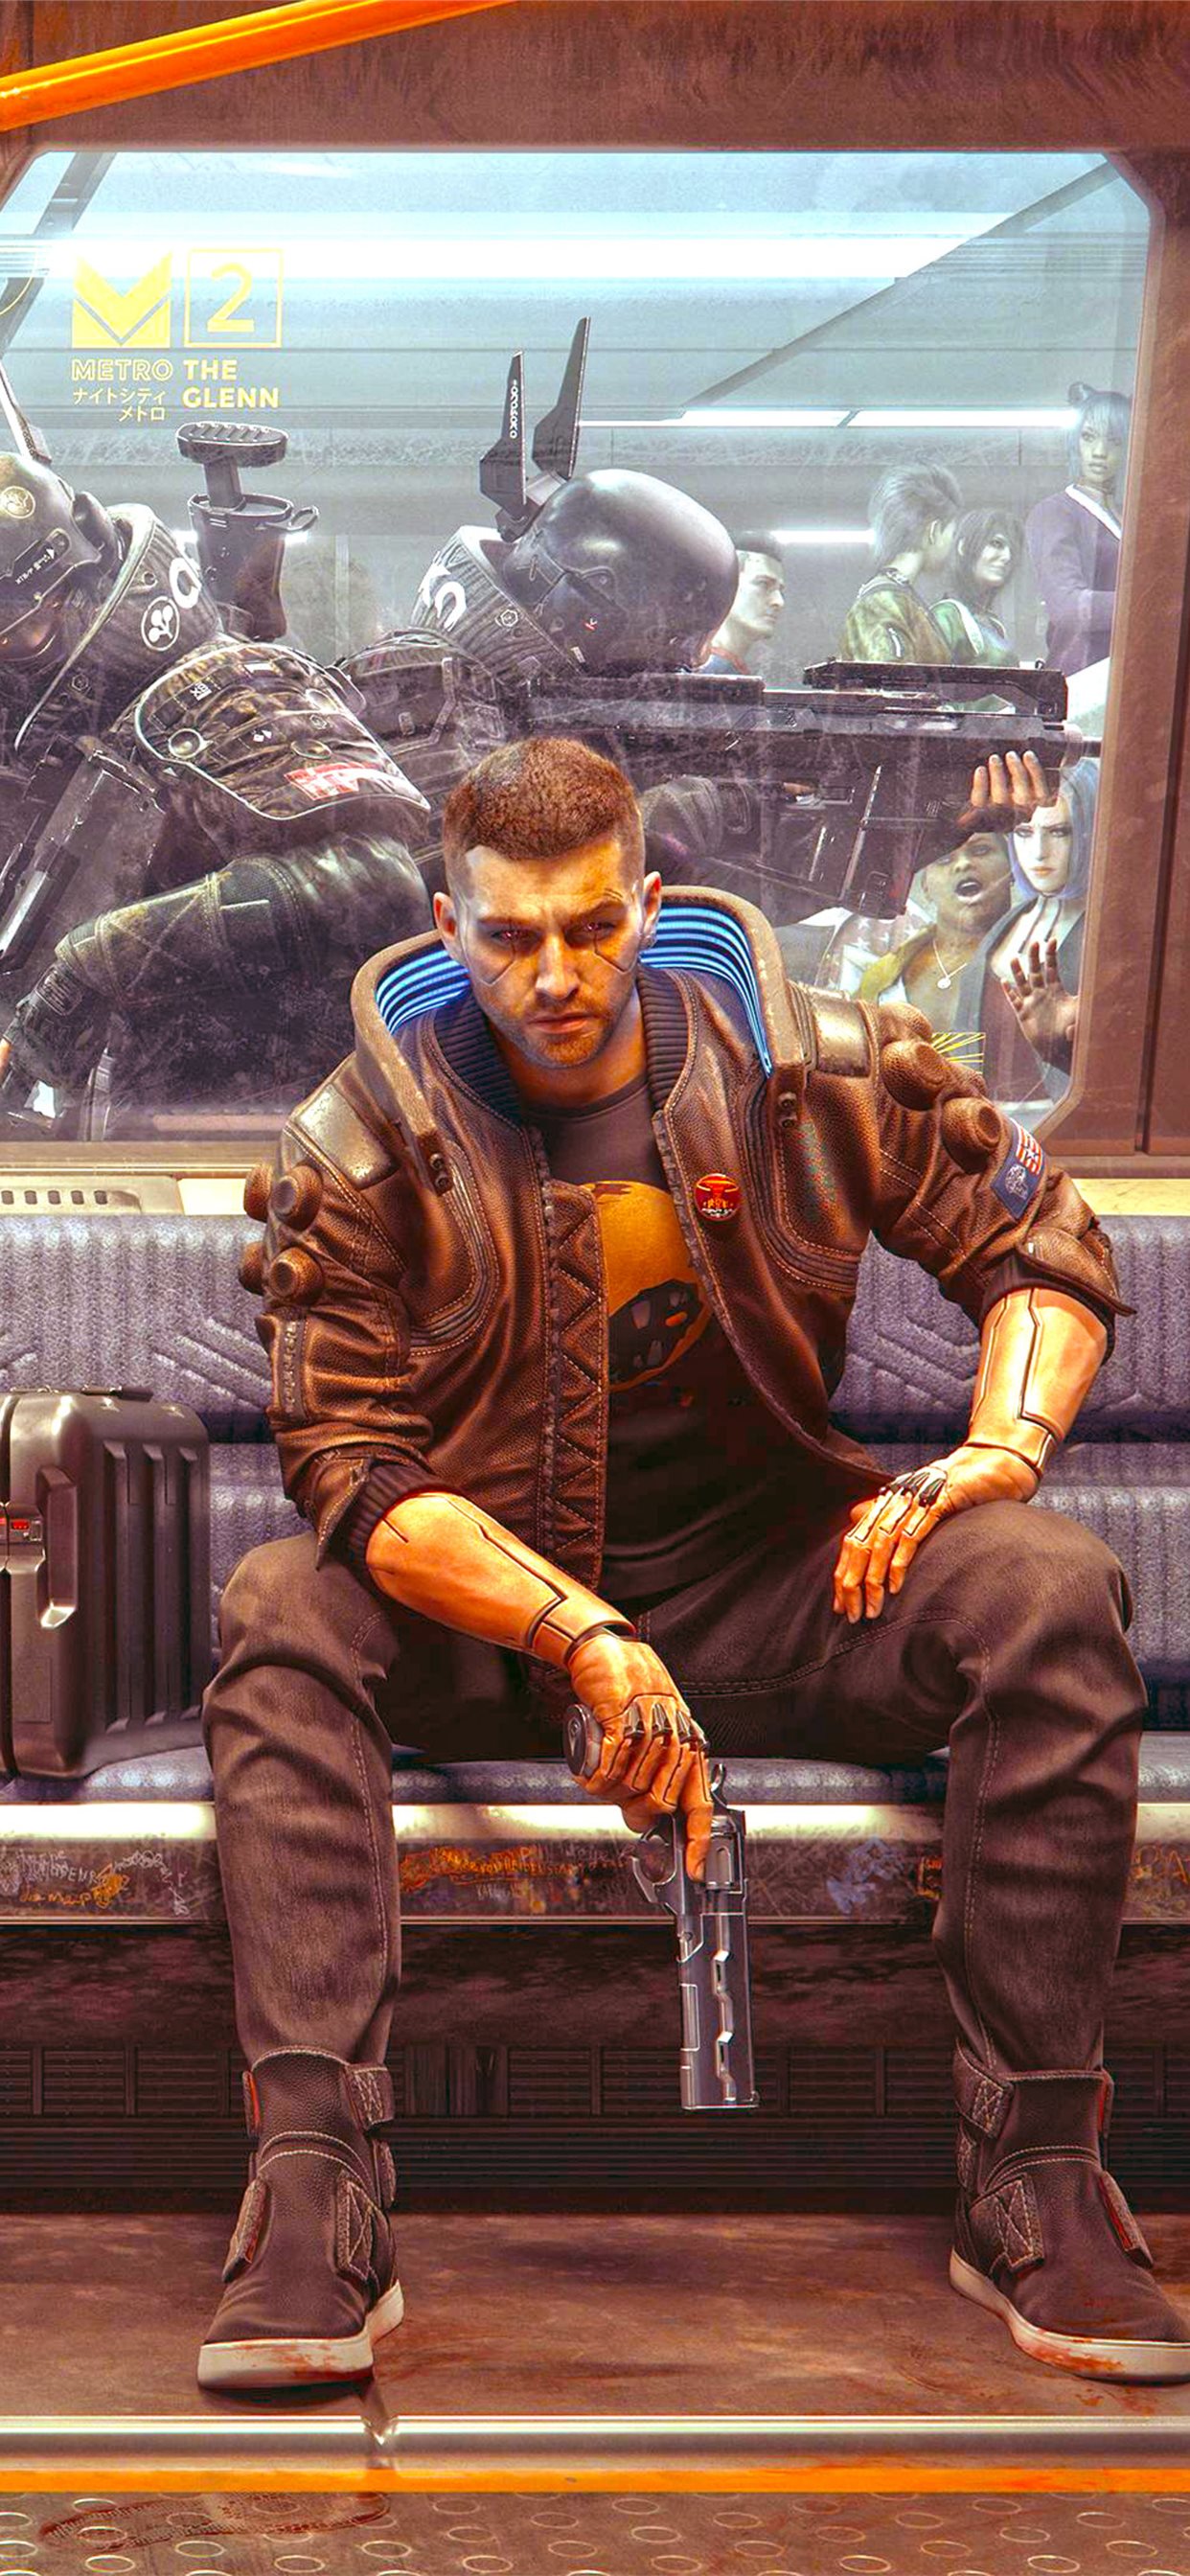 射击类游戏人物手拿手枪坐在地铁座椅上的宣传海报